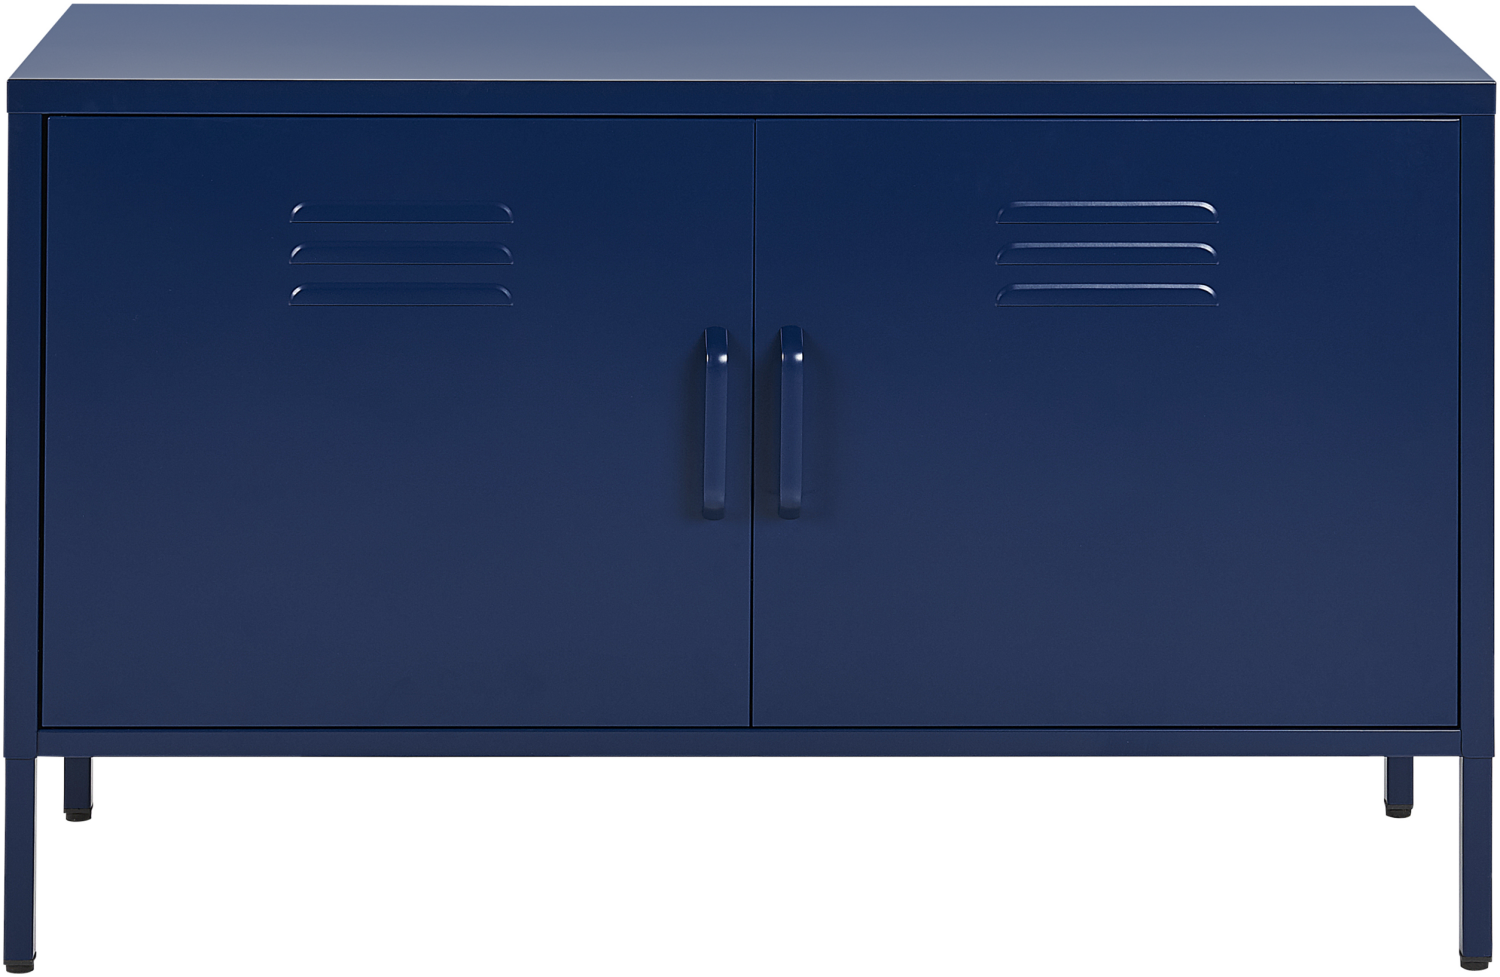 Metallschrank Blau Stahl 100 x 40 x 65 cm Sideboard mit hohen Füßen Türen Griffen Regalboden Wohnzimmer Büro Arbeitszimmer Flur Bad Bild 1